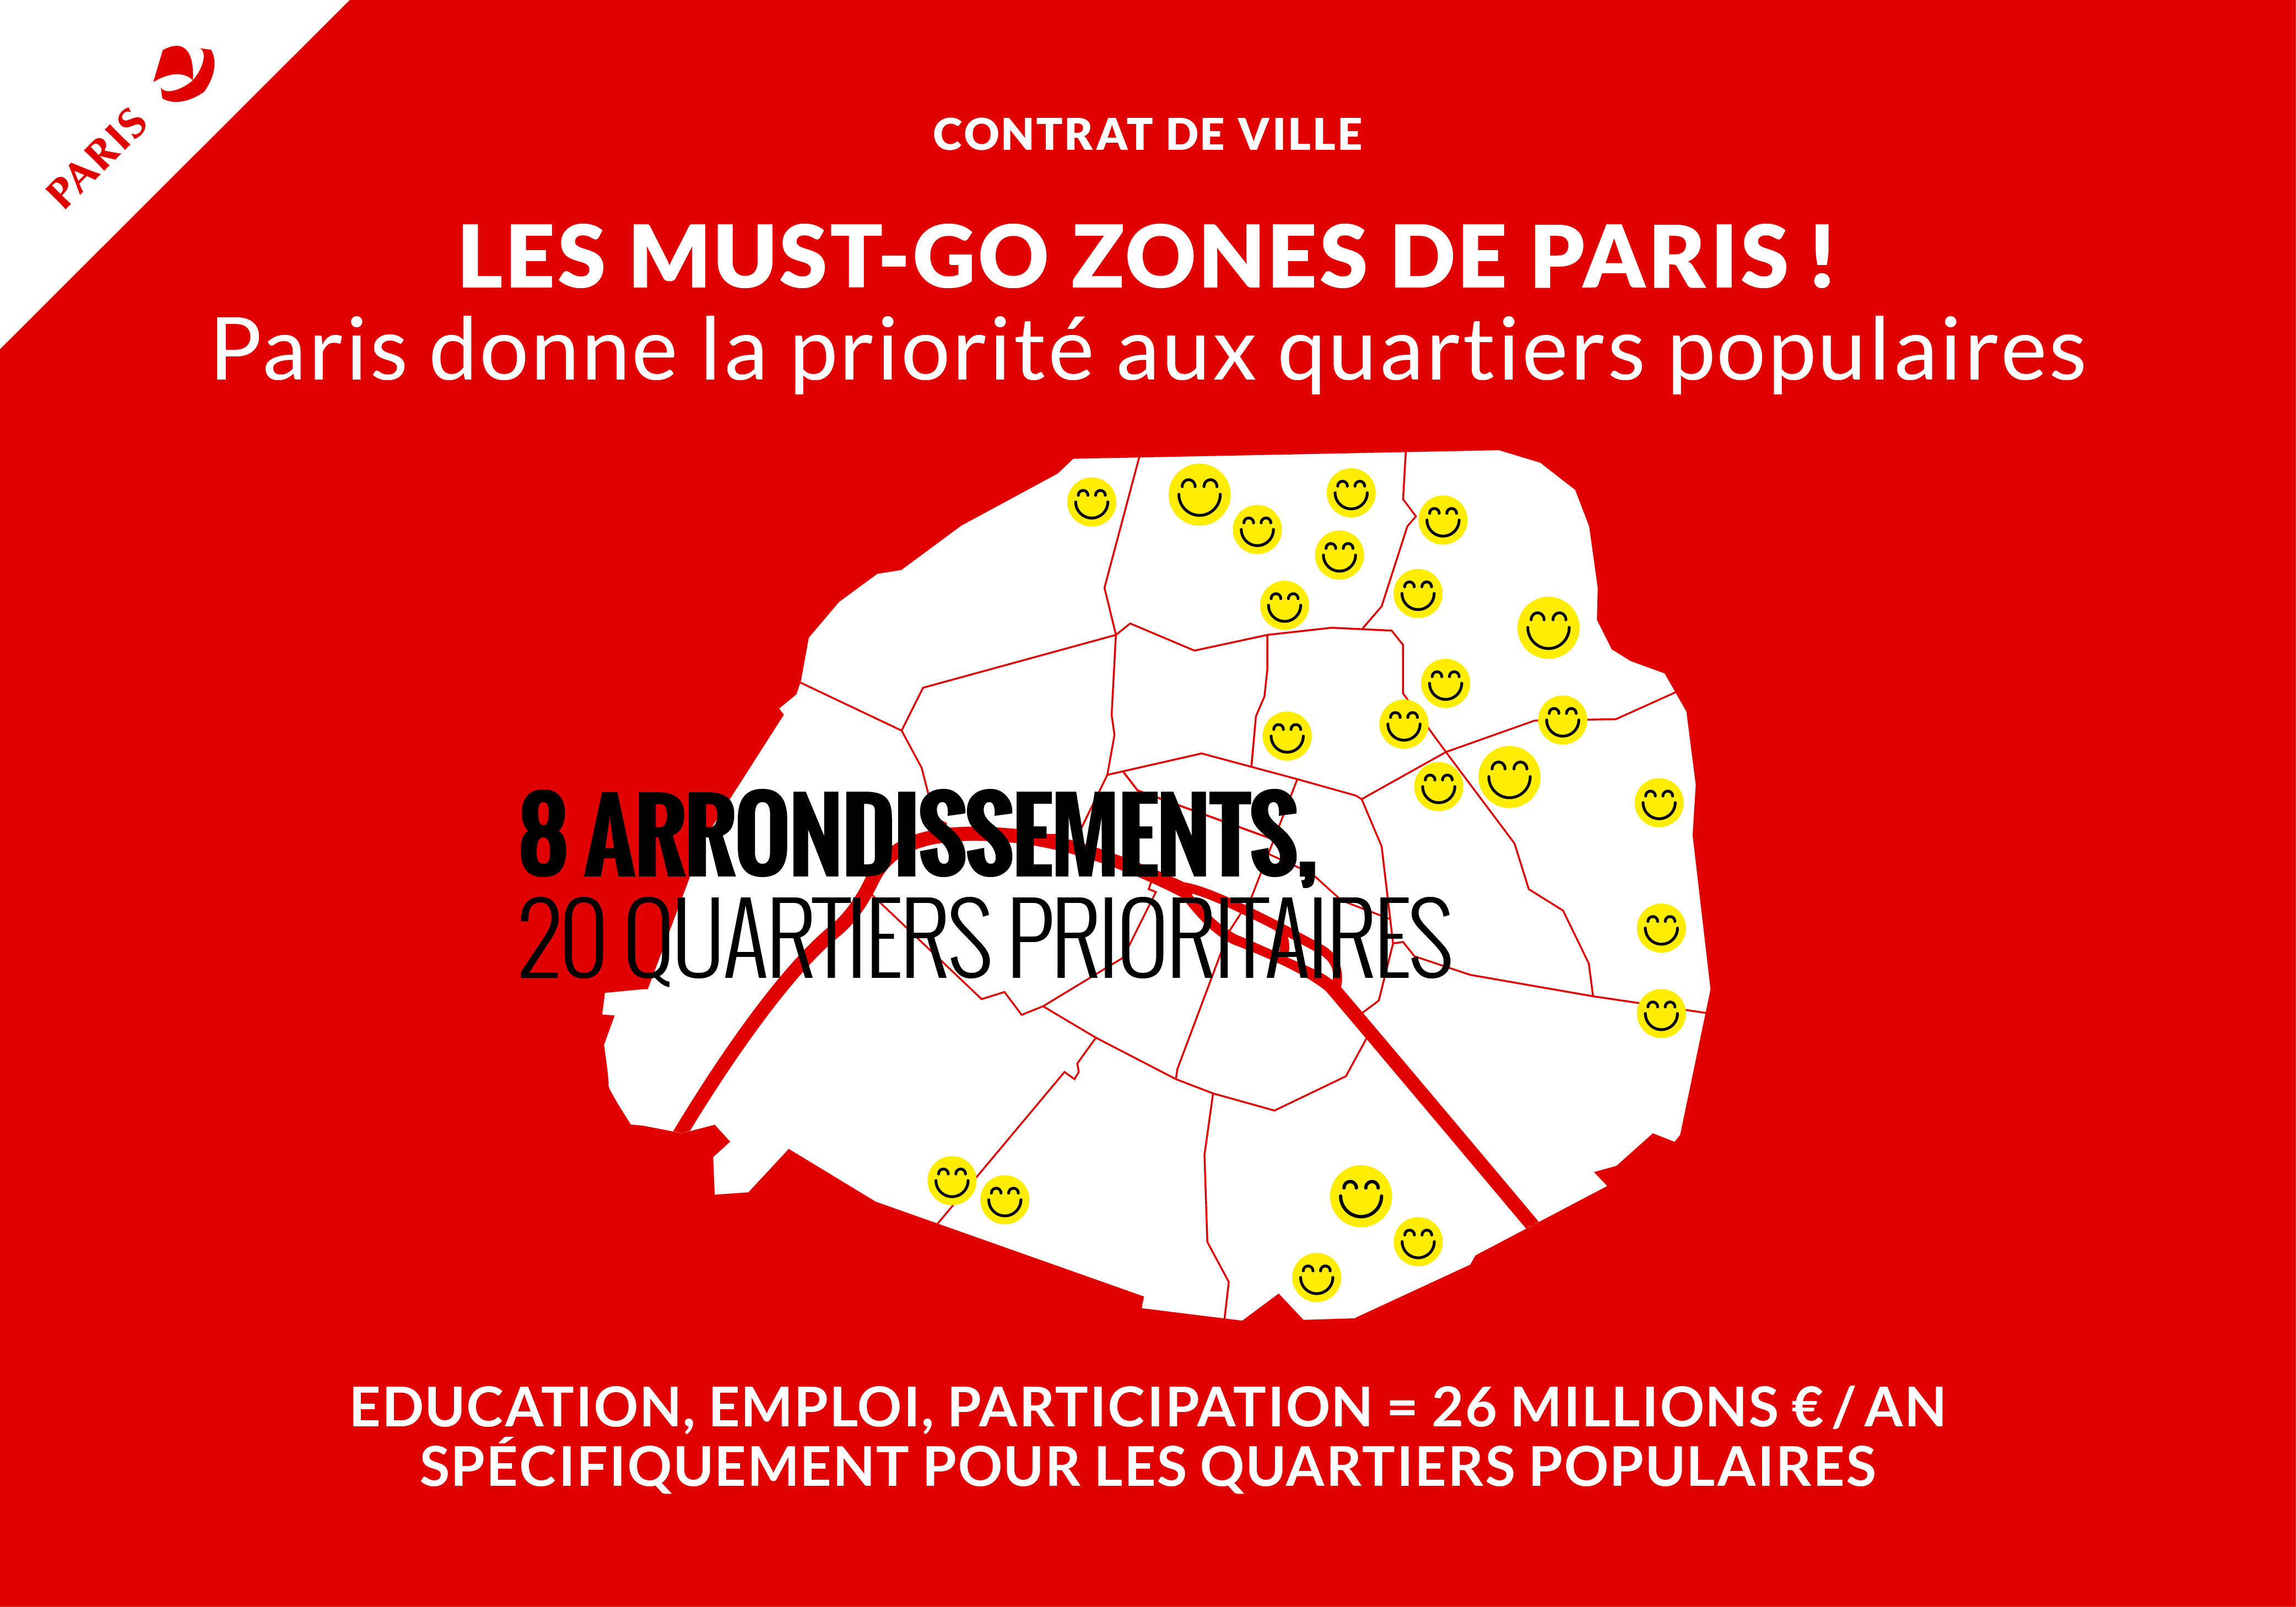 Les MUST-GO zones de Paris, voir "La régulation de la gentrification"